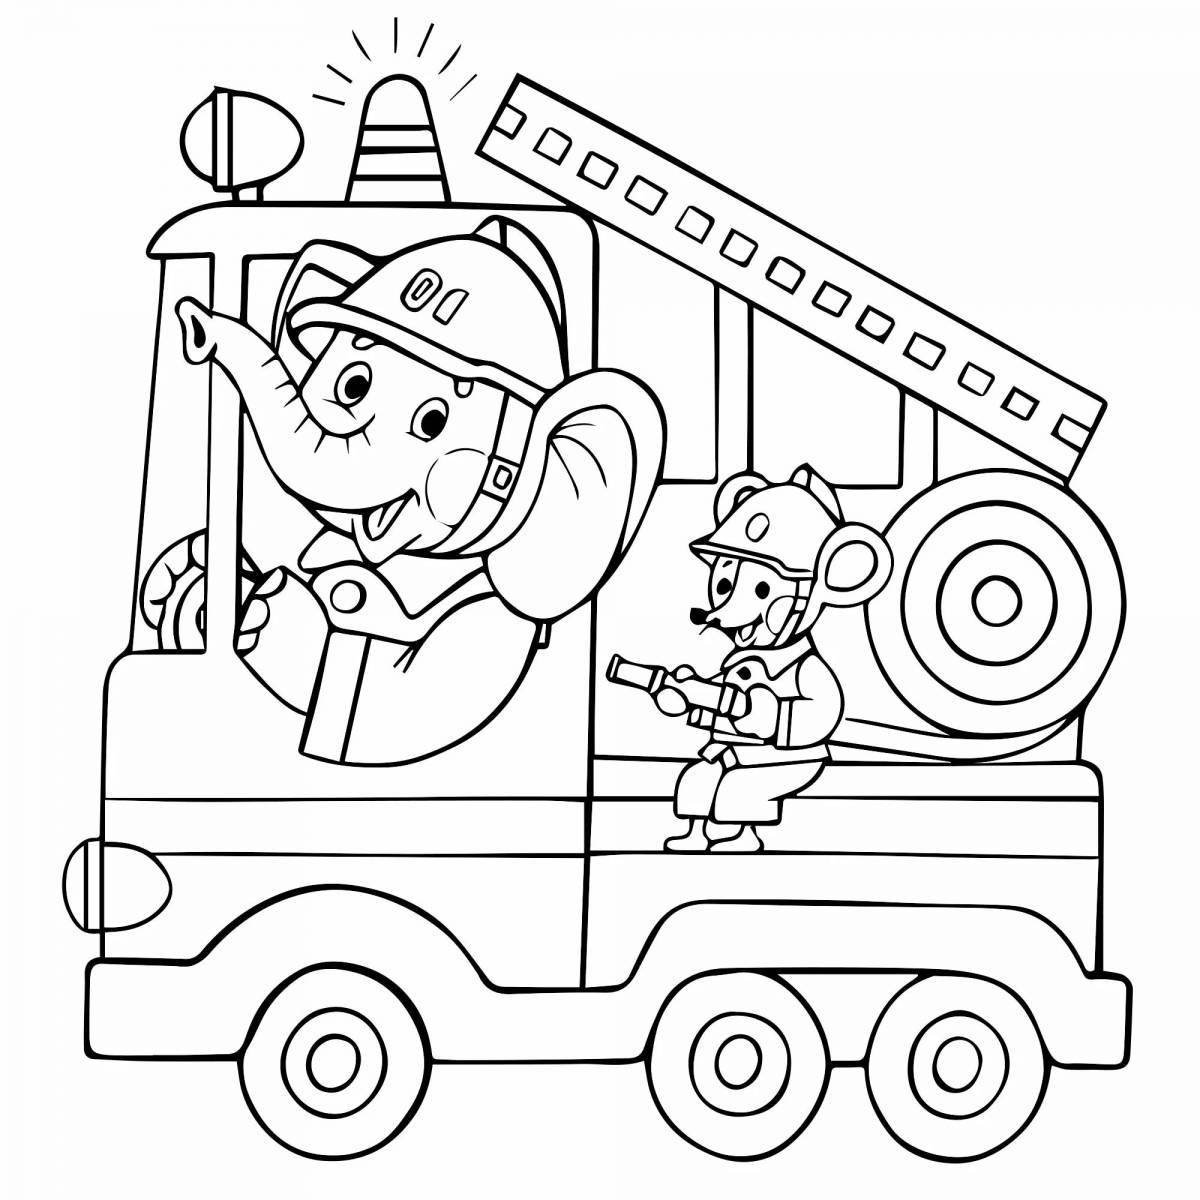 Раскраска «пожарная безопасность» для детского сада